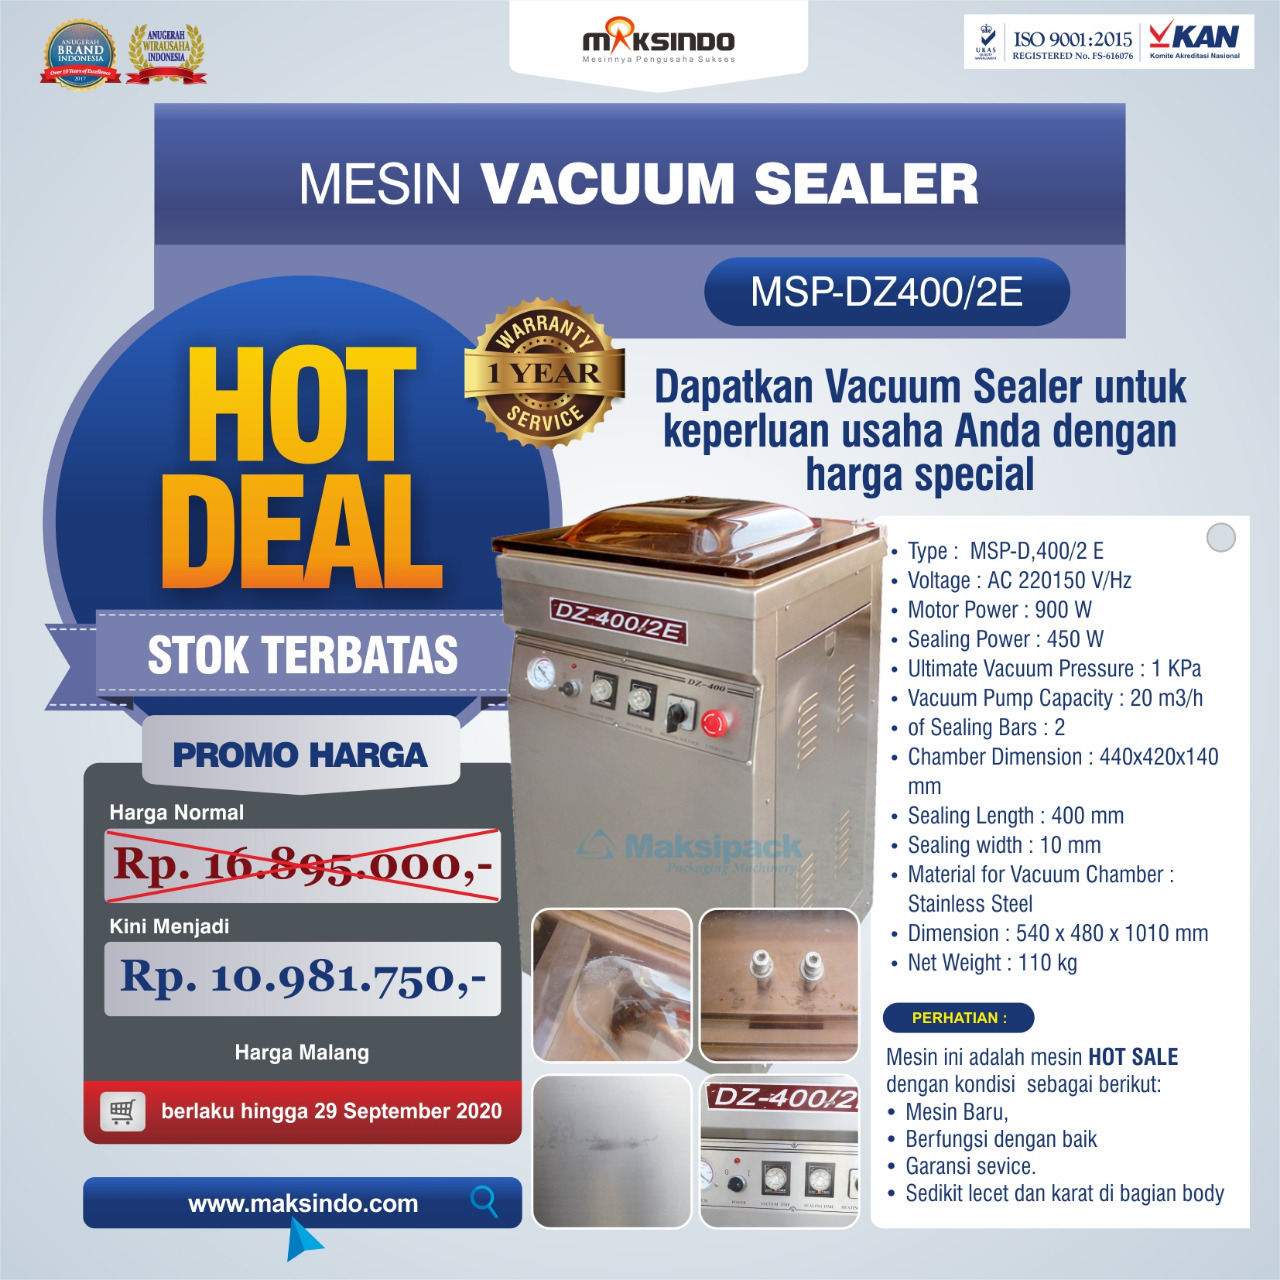 Jual Hot Deal Mesin Vacuum Sealer Type MSP-DZ400/2 E di Bogor